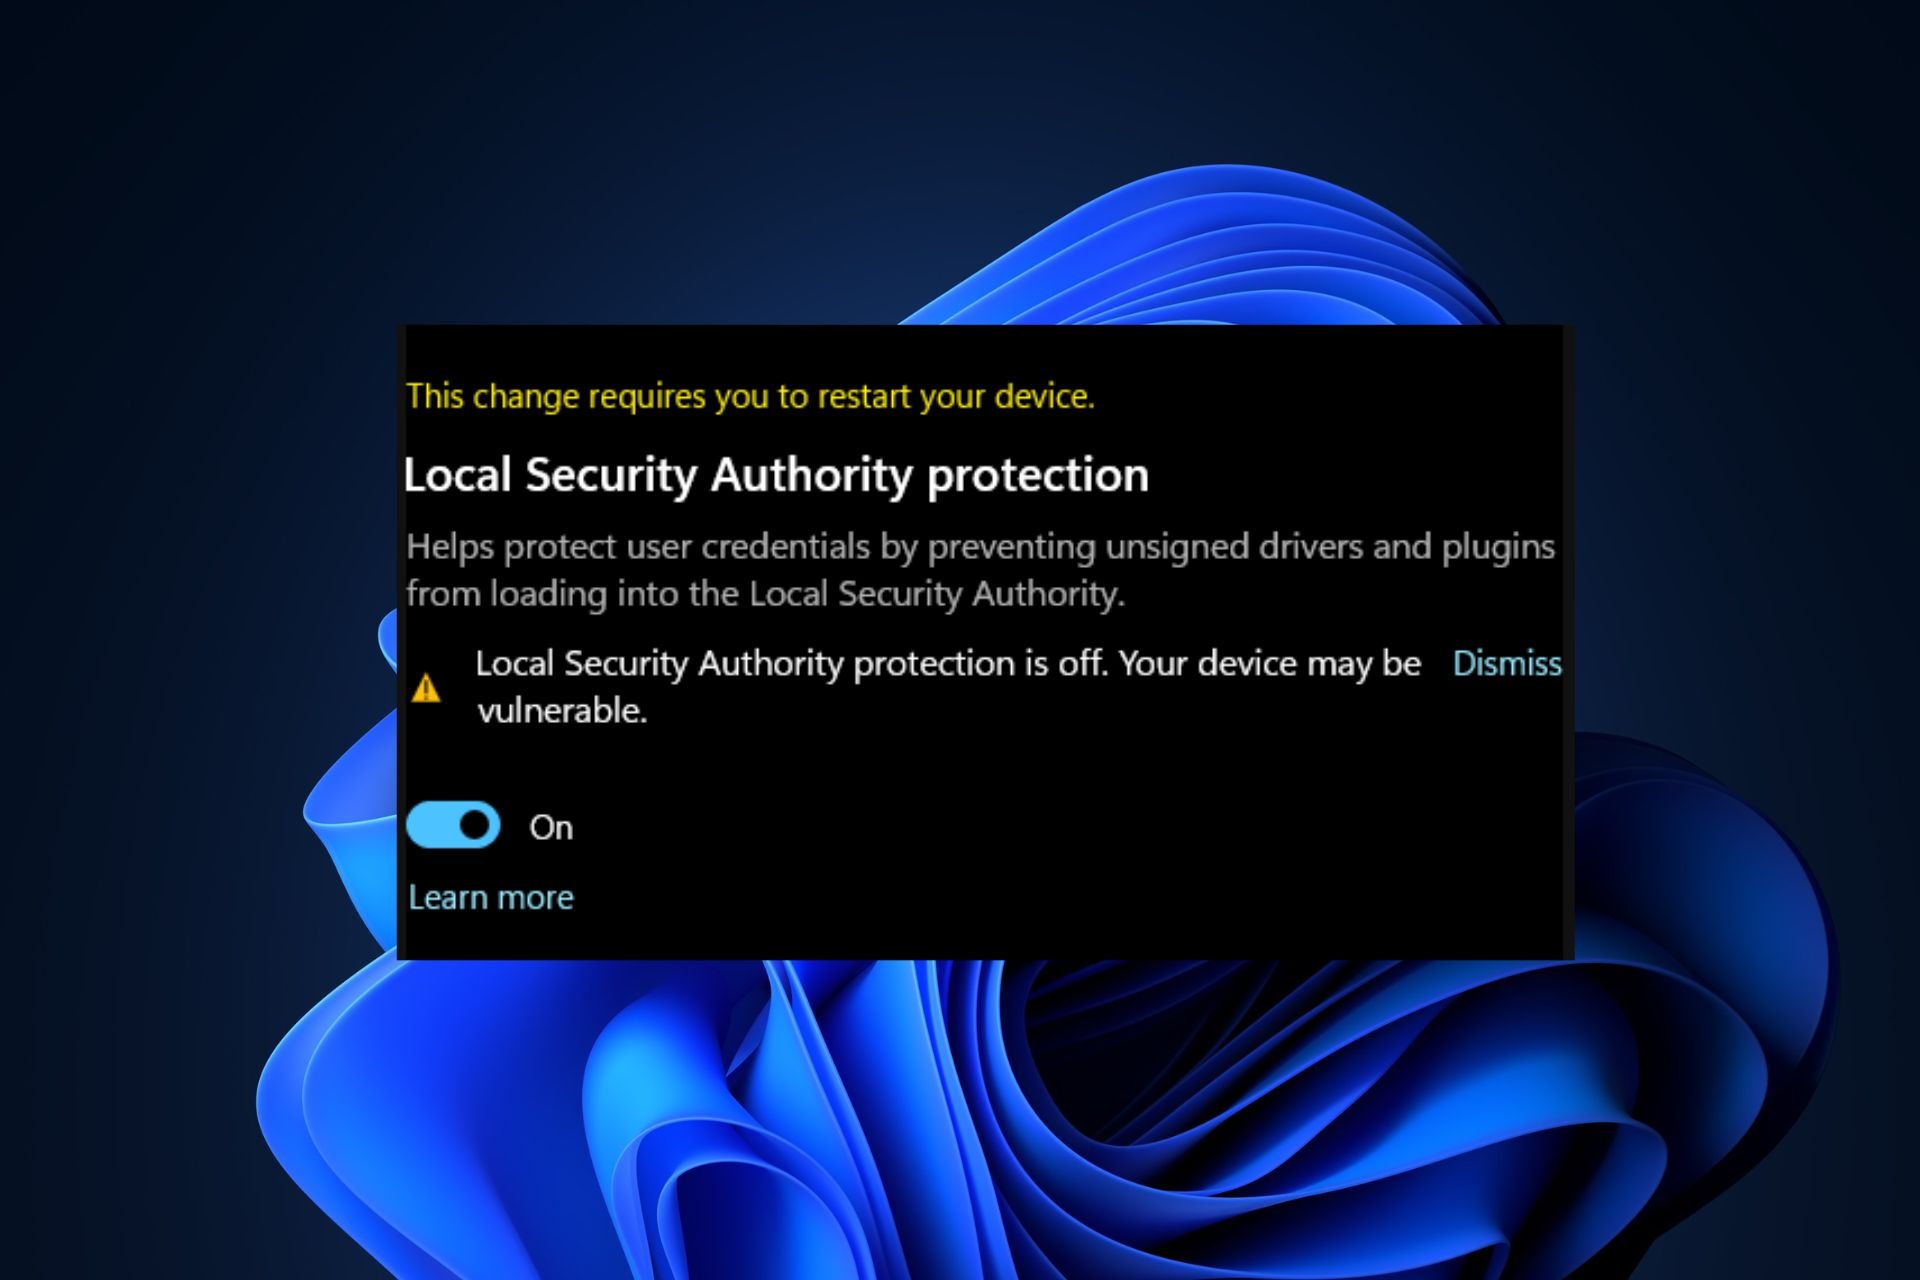 la protección de la autoridad de seguridad local está desactivada